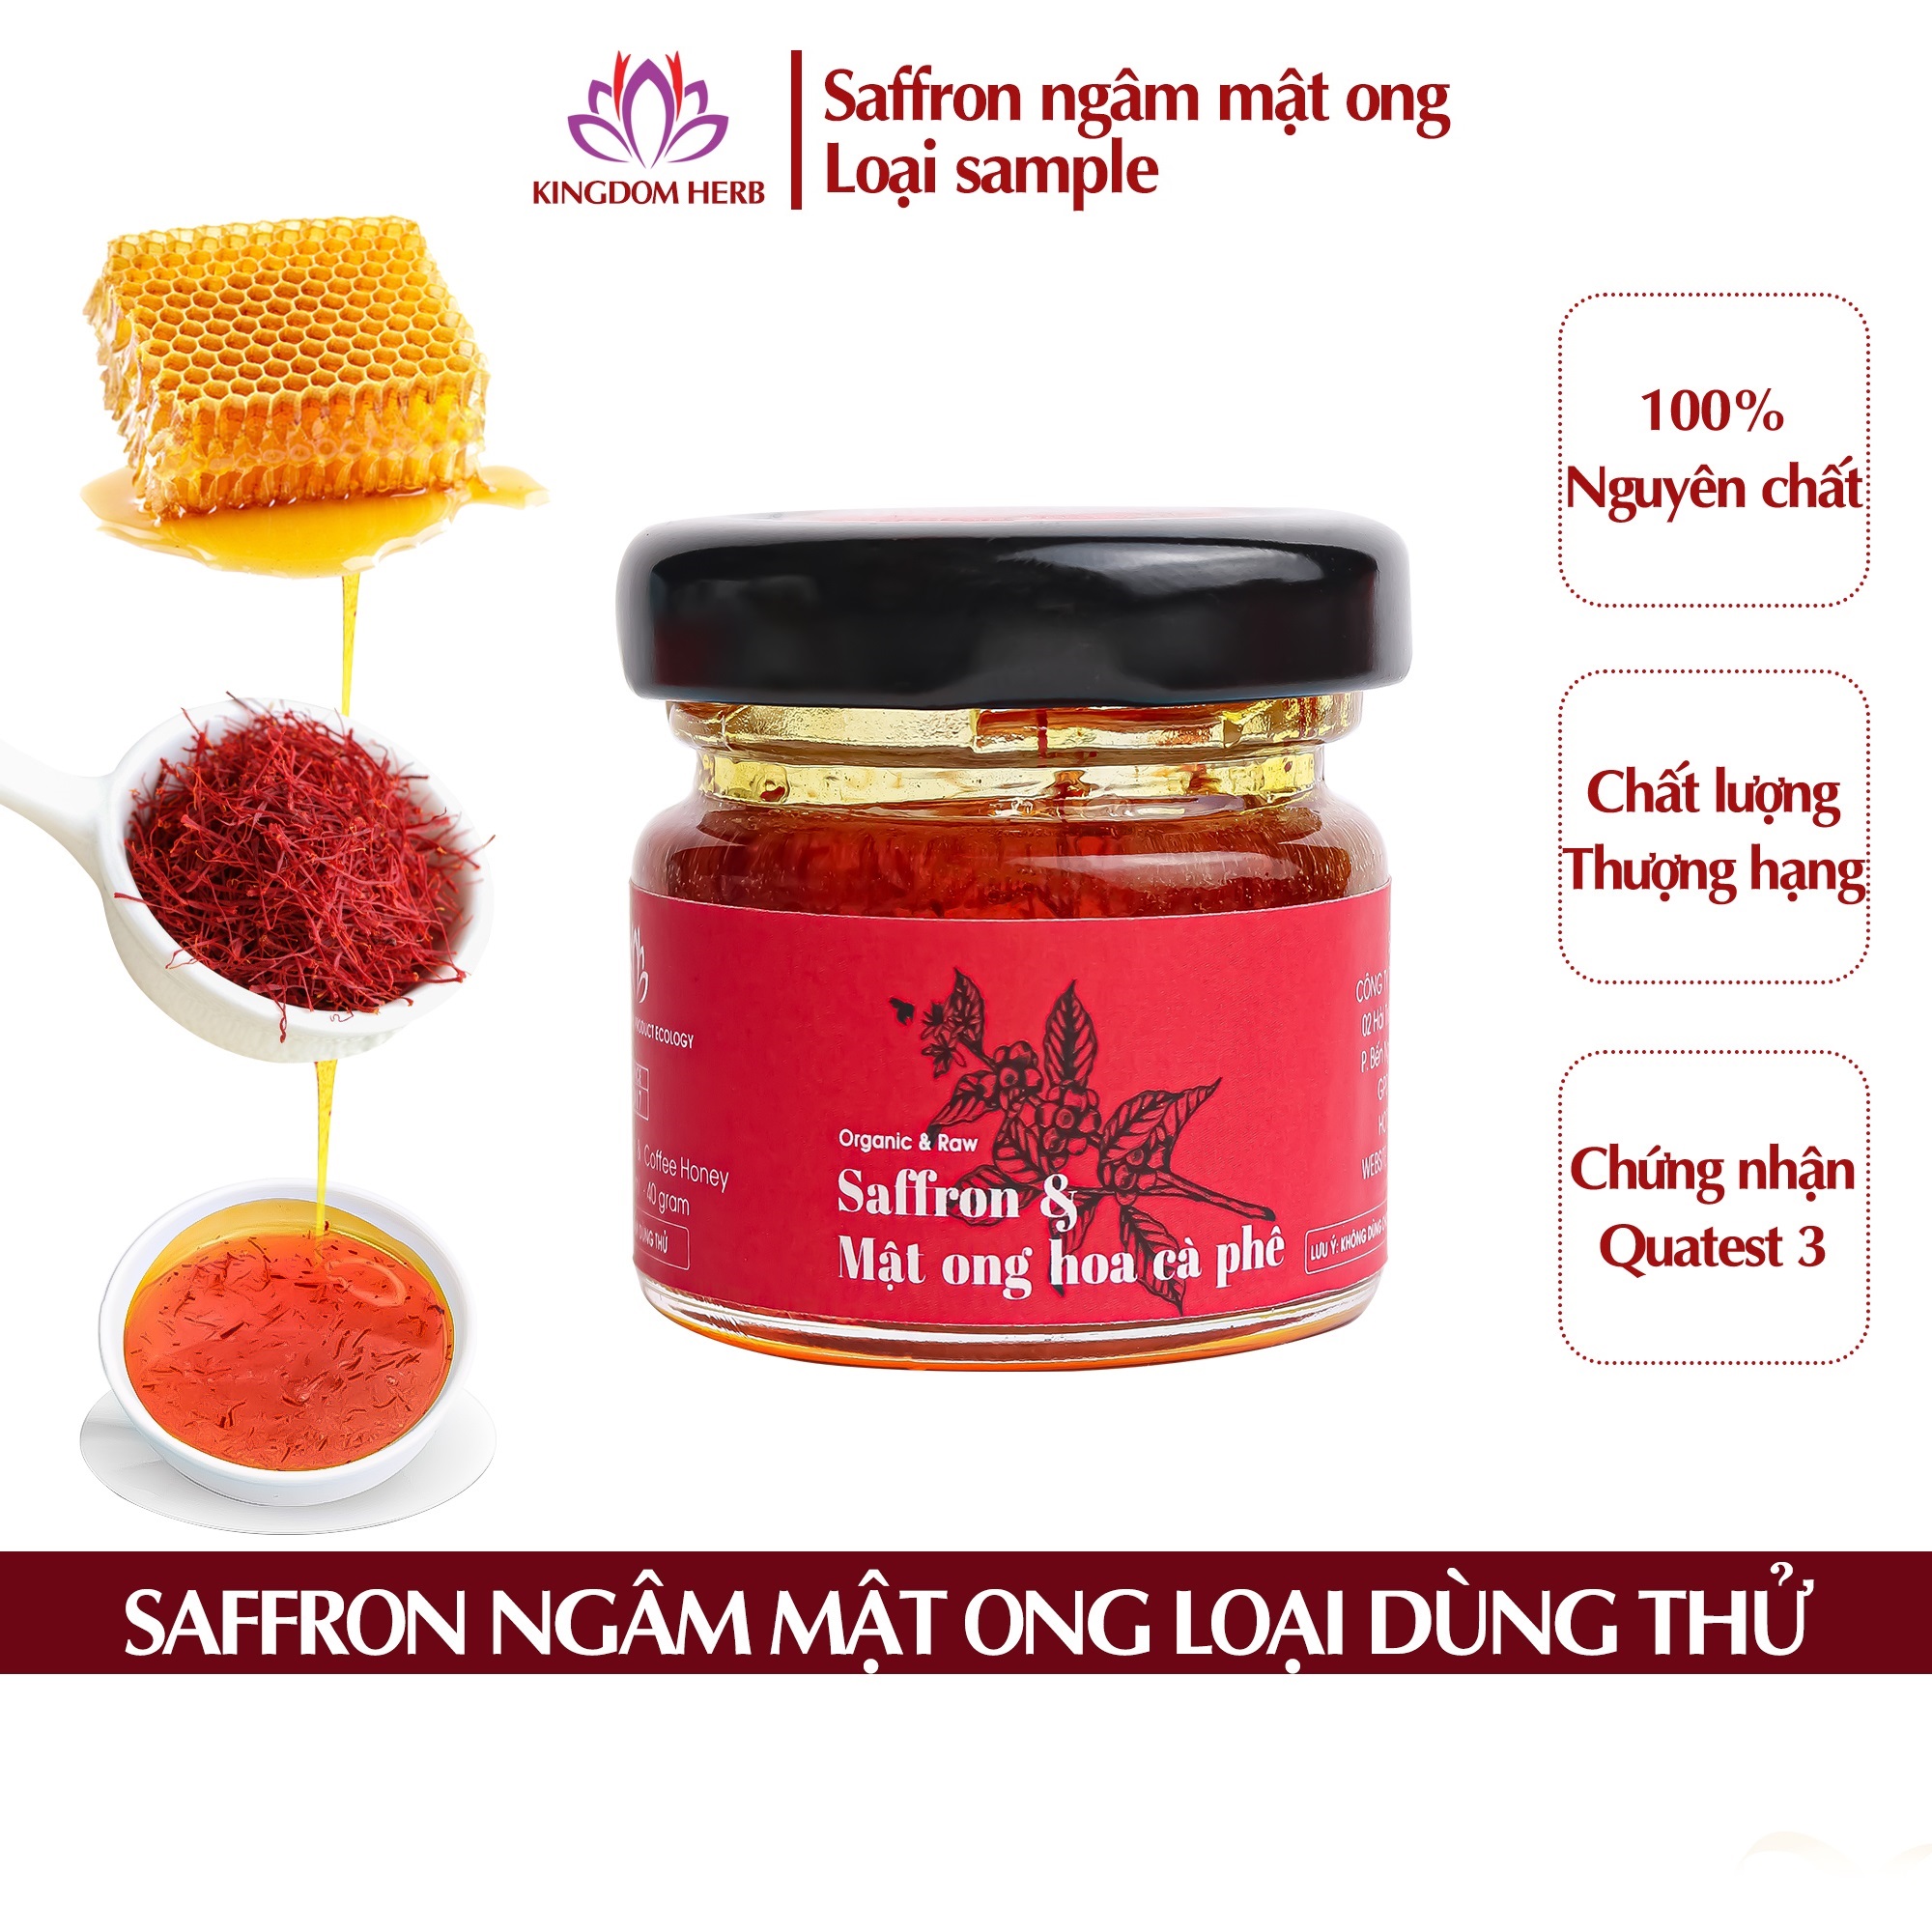 Saffron ngâm mật ong Kingdom thượng hạng nguyên chất 100% - hộp 40g 1